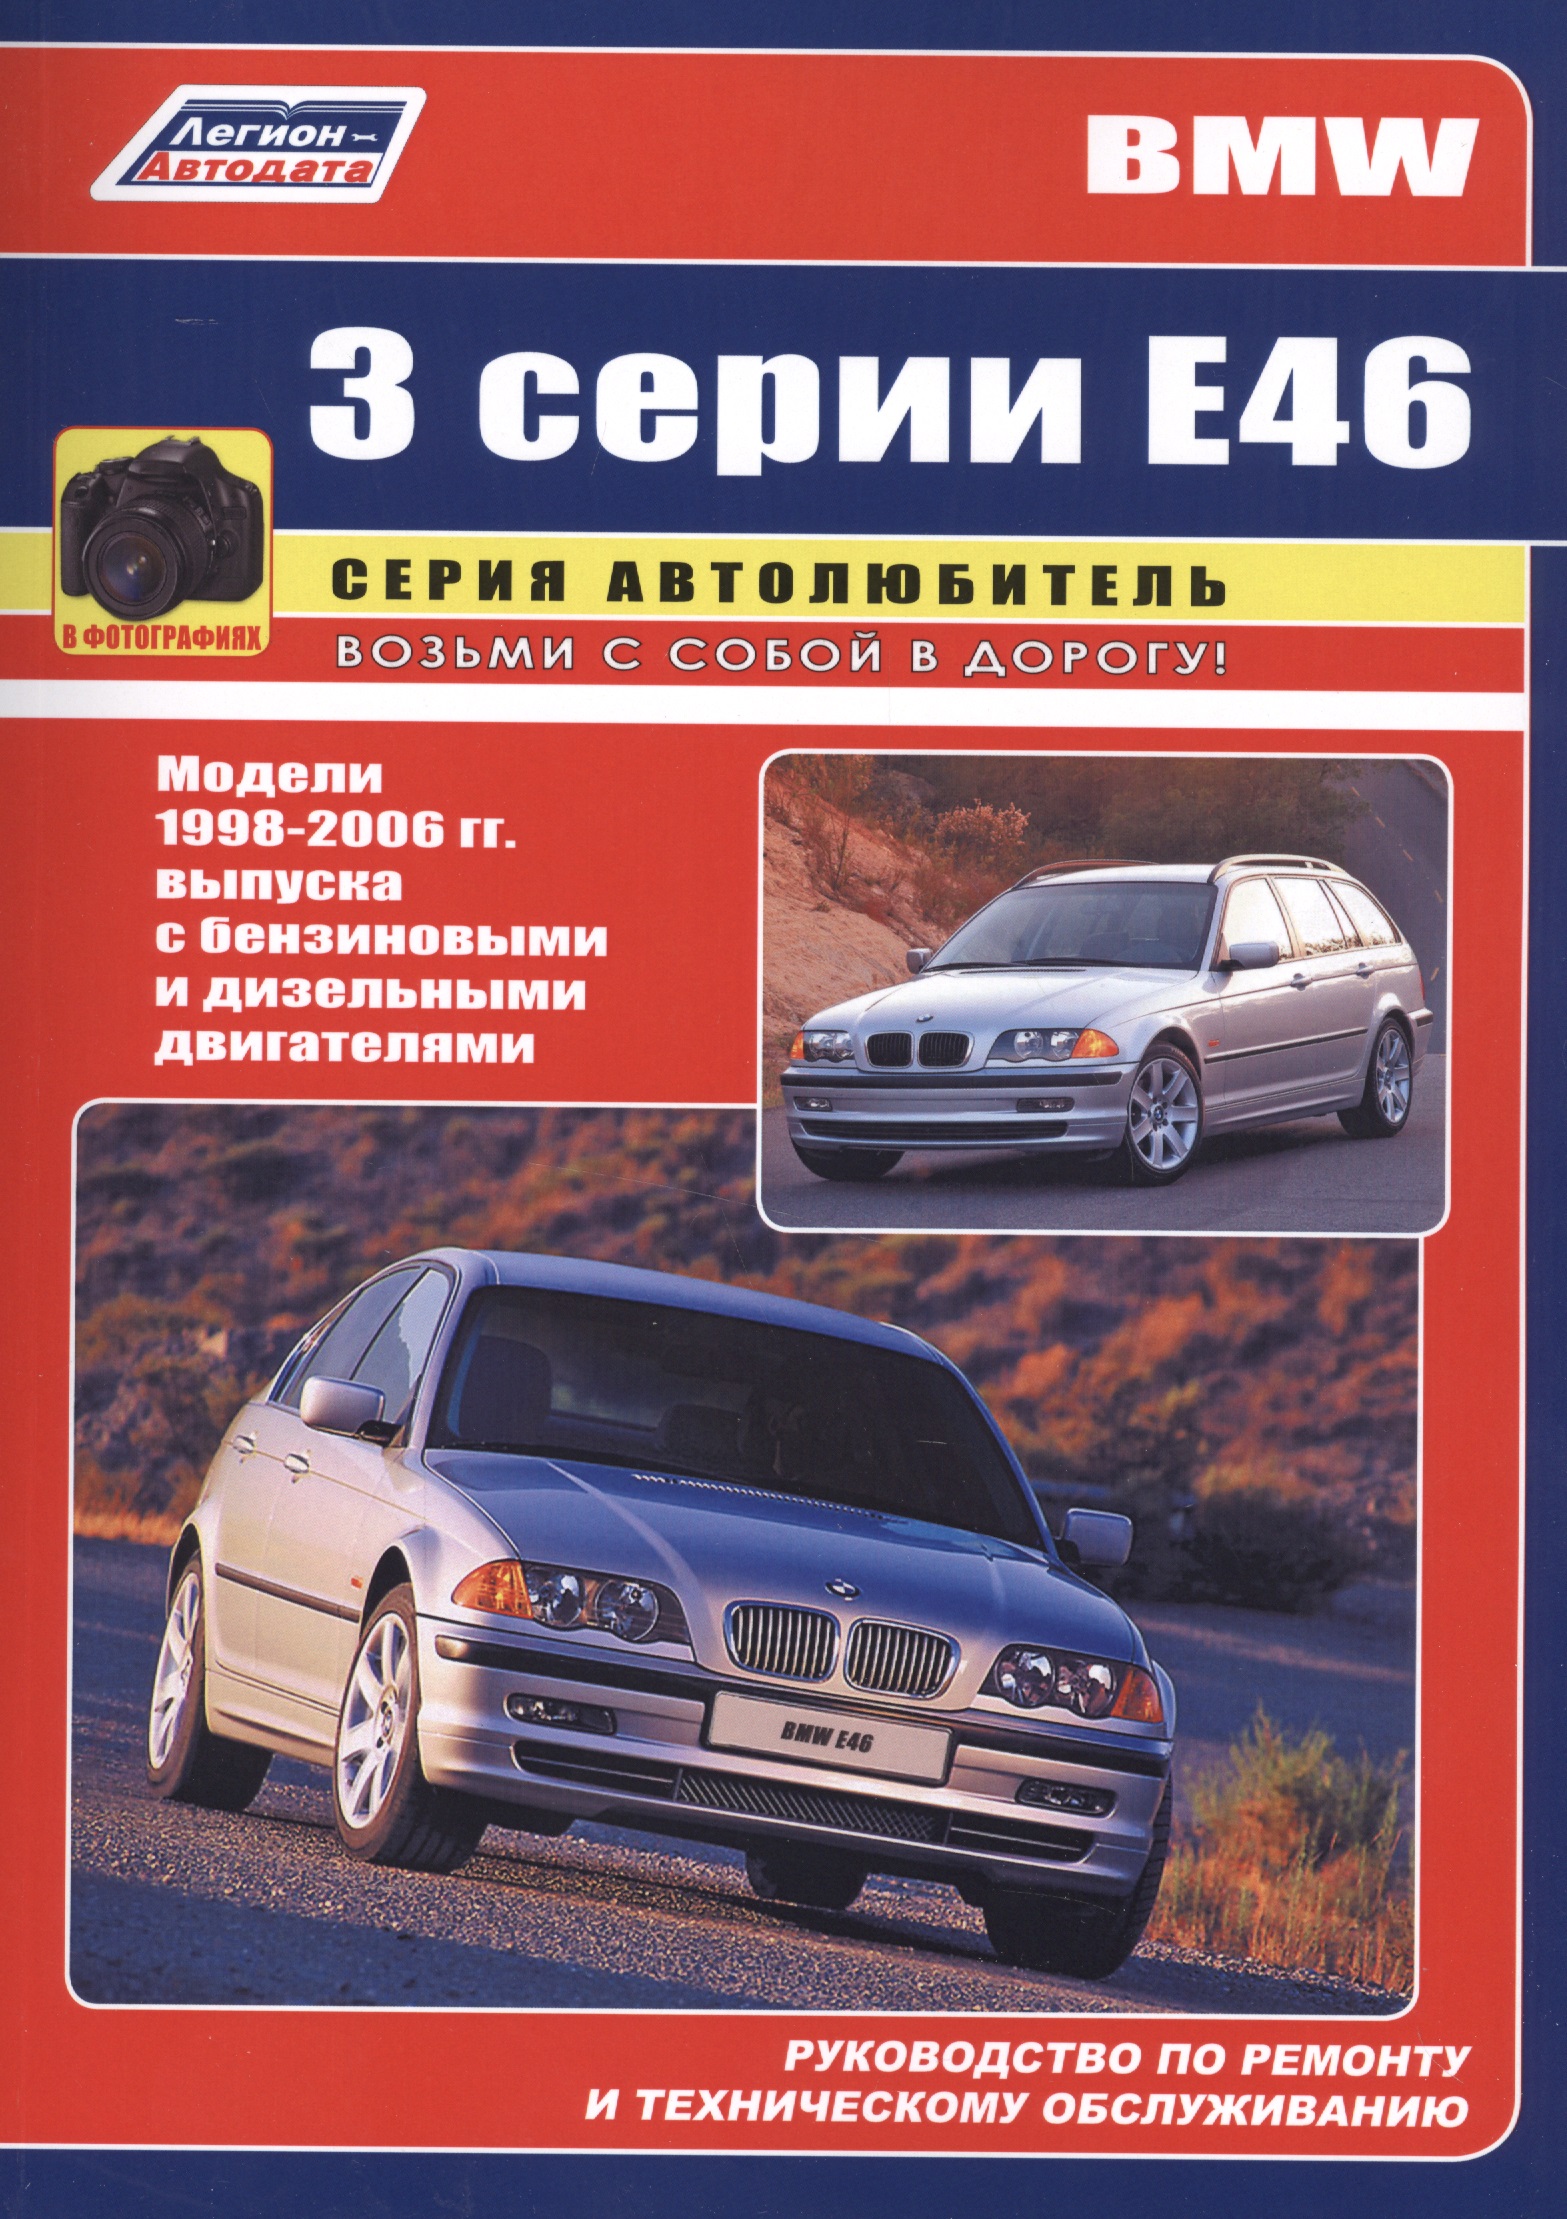 цена BMW 3 серии Е46 в фотографиях. Модели 1998-2006 гг. выпуска с бензиновыми и дизельными двигателями. Руководство по ремонту и техническому обслуживанию